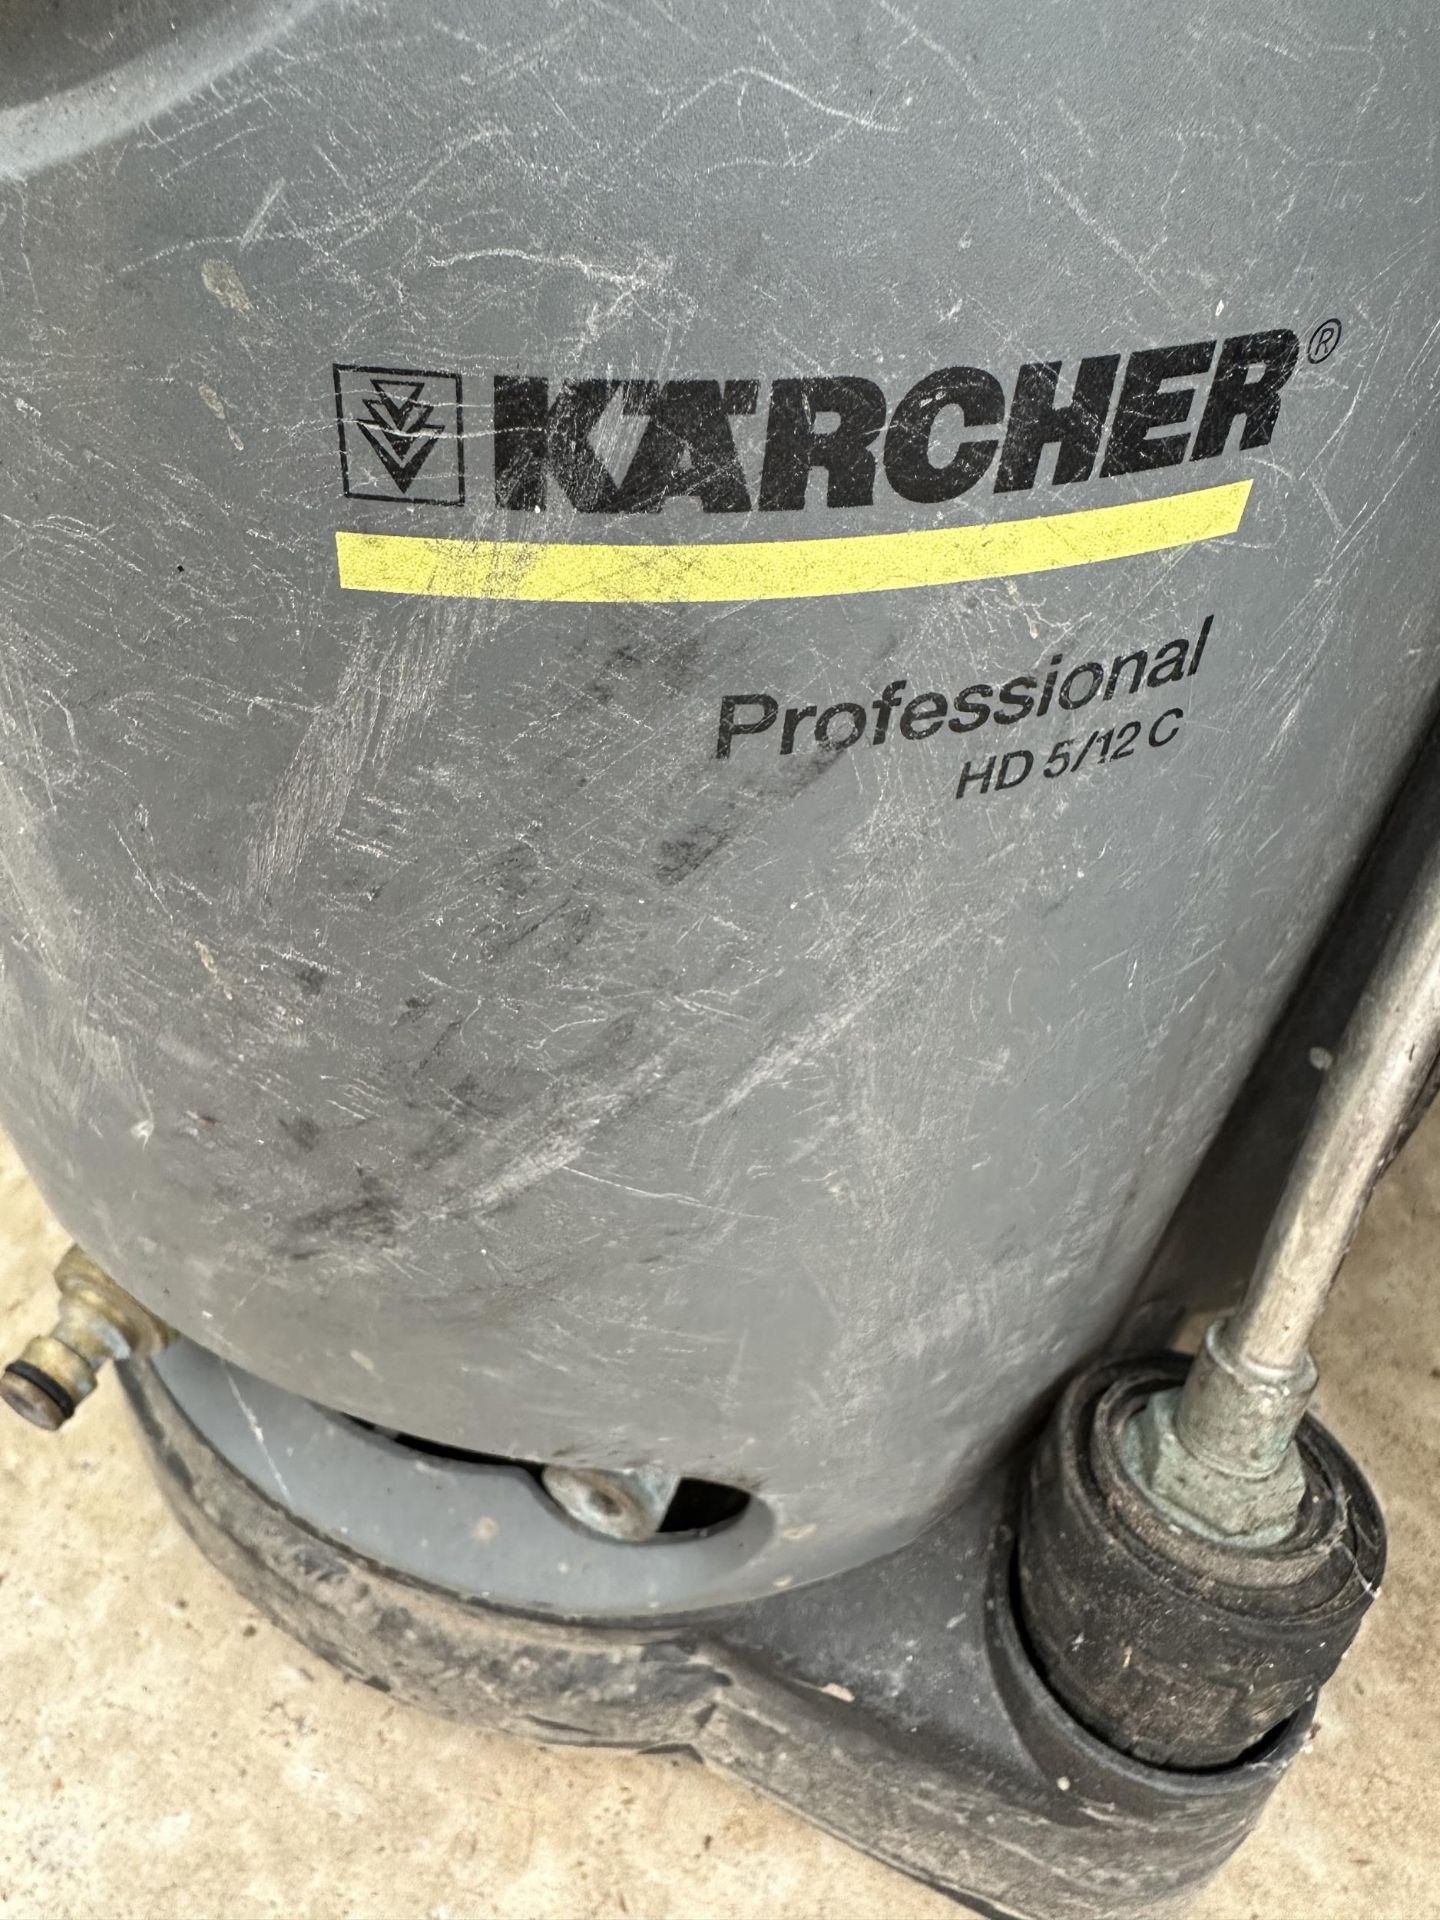 A KARCHER PROFESSIONAL HD5/12C PRESSURE WASHER - Bild 2 aus 2